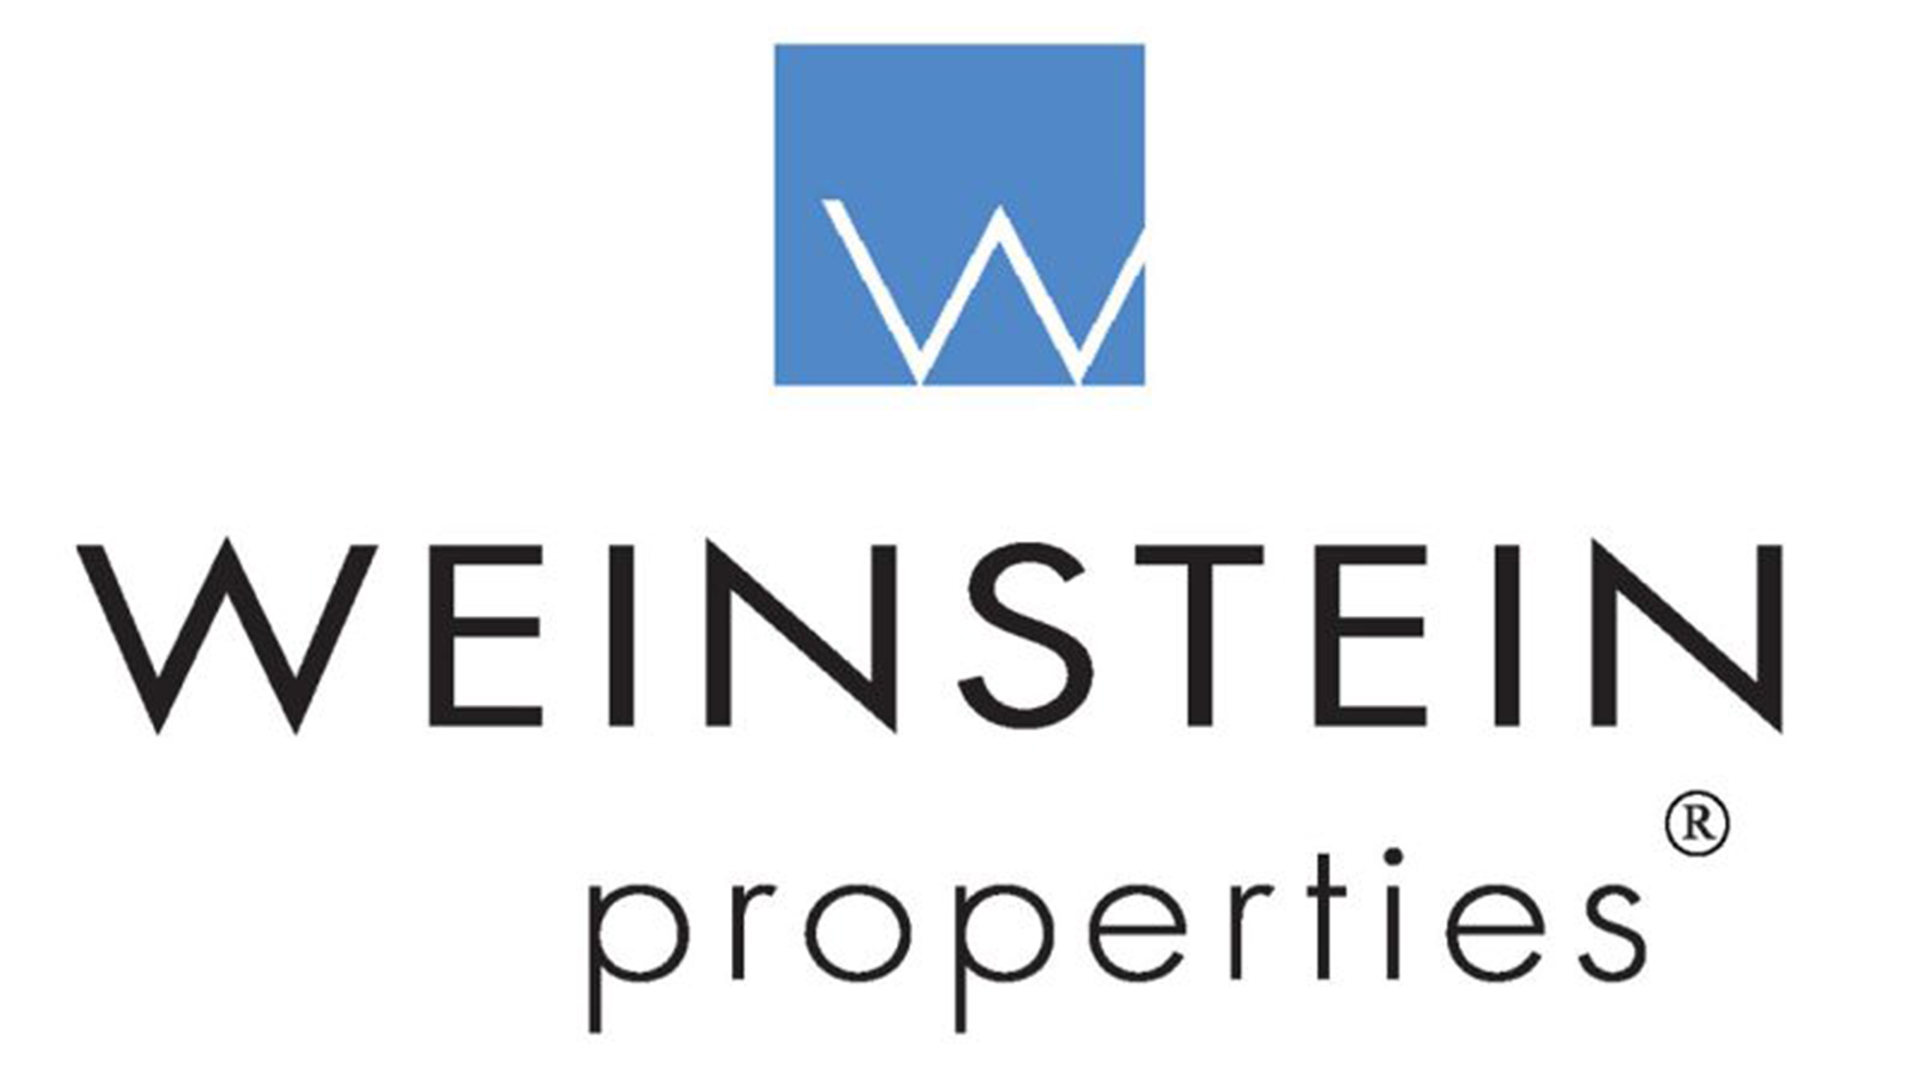 Weinstein Properties logo